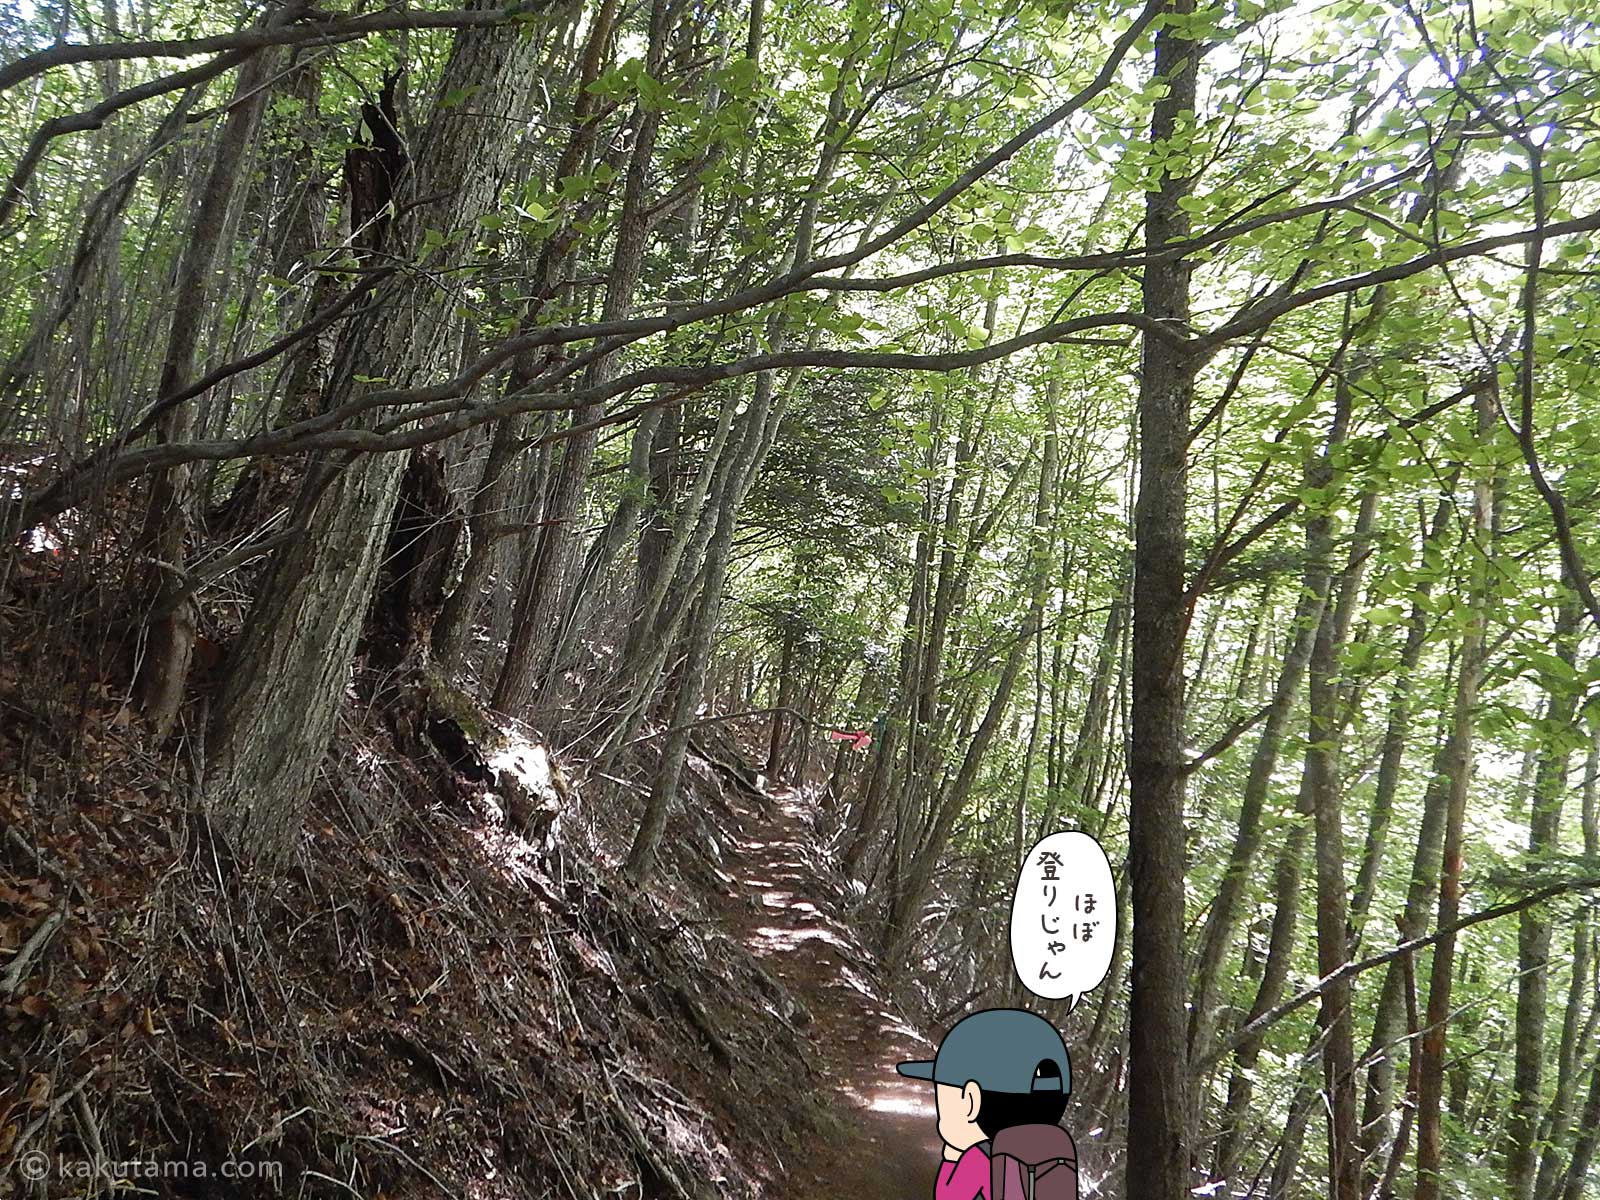 丸川荘へ向かって登る登山者のイラスト2